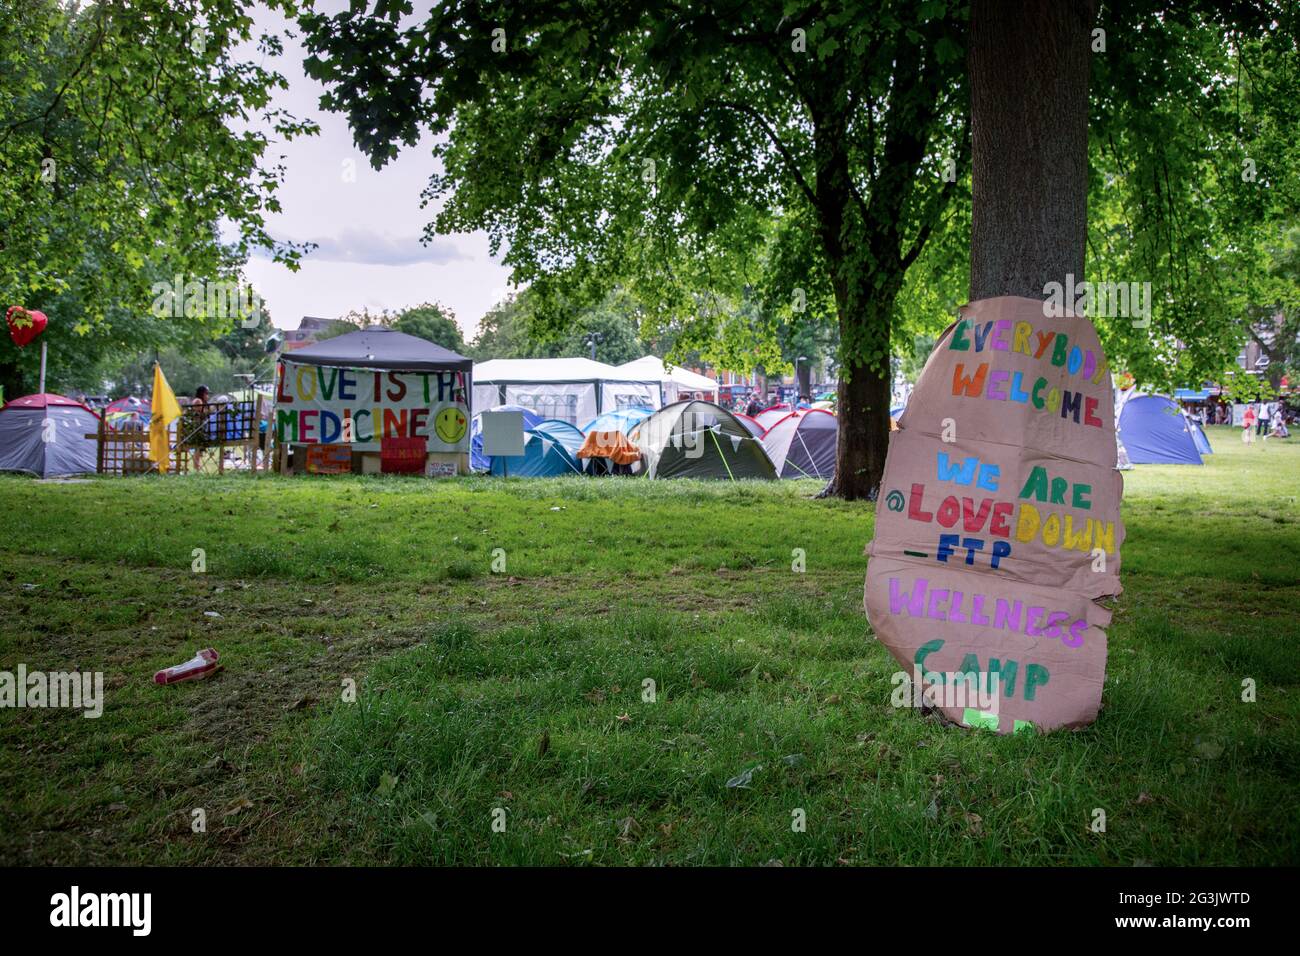 Signalisation dans un camp de manifestants Freedom sur Shepherd's Bush Green, Londres, Royaume-Uni. Juin 2021 Banque D'Images